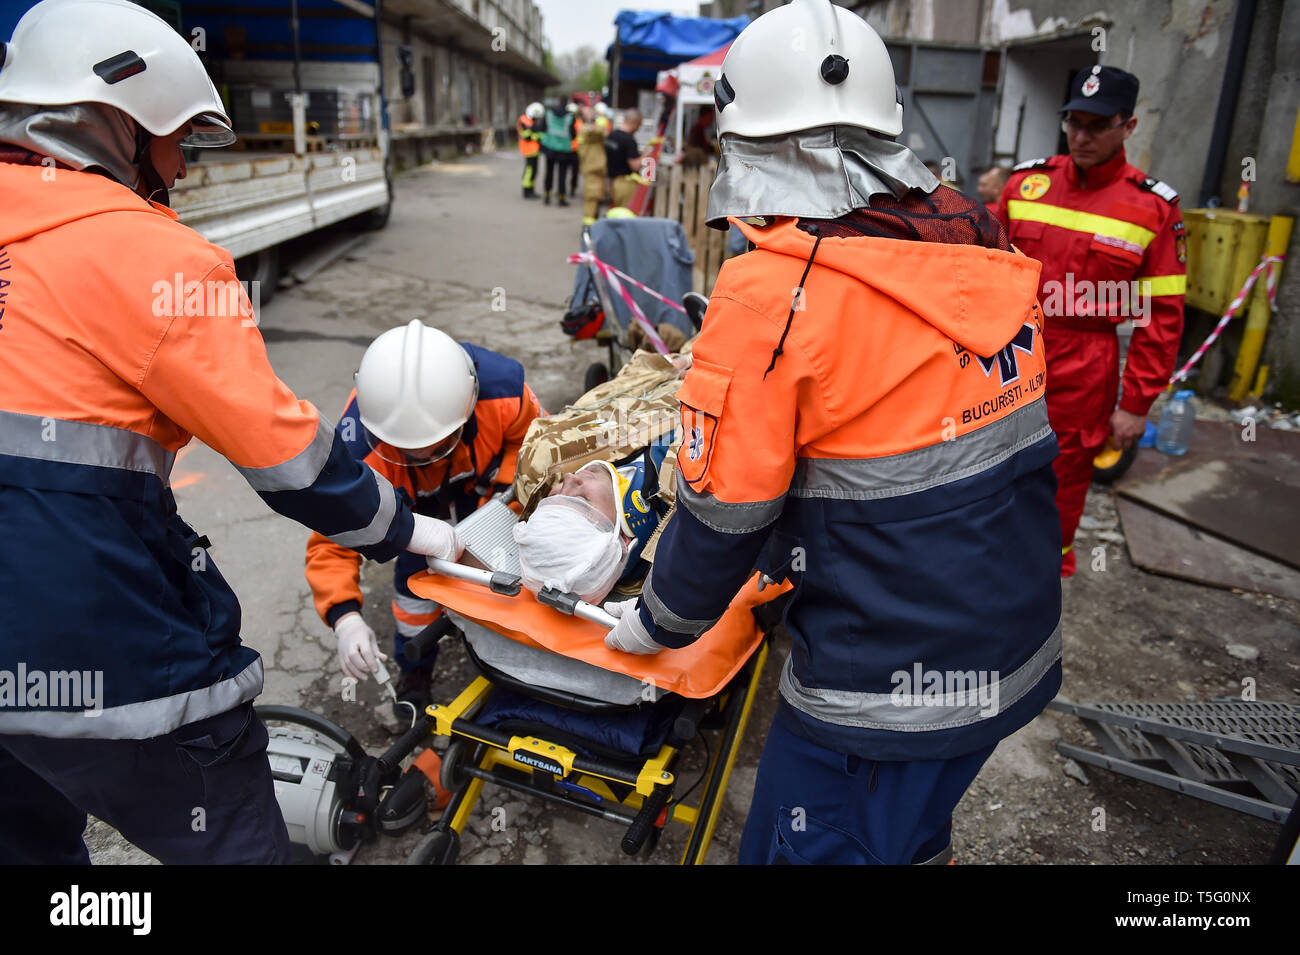 Bucarest, Rumania - Abril 10, 2019: el equipo de rescate de emergencia en acción durante el ejercicio médico más complejos en la historia de la OTAN, vigoroso Guerrero Foto de stock